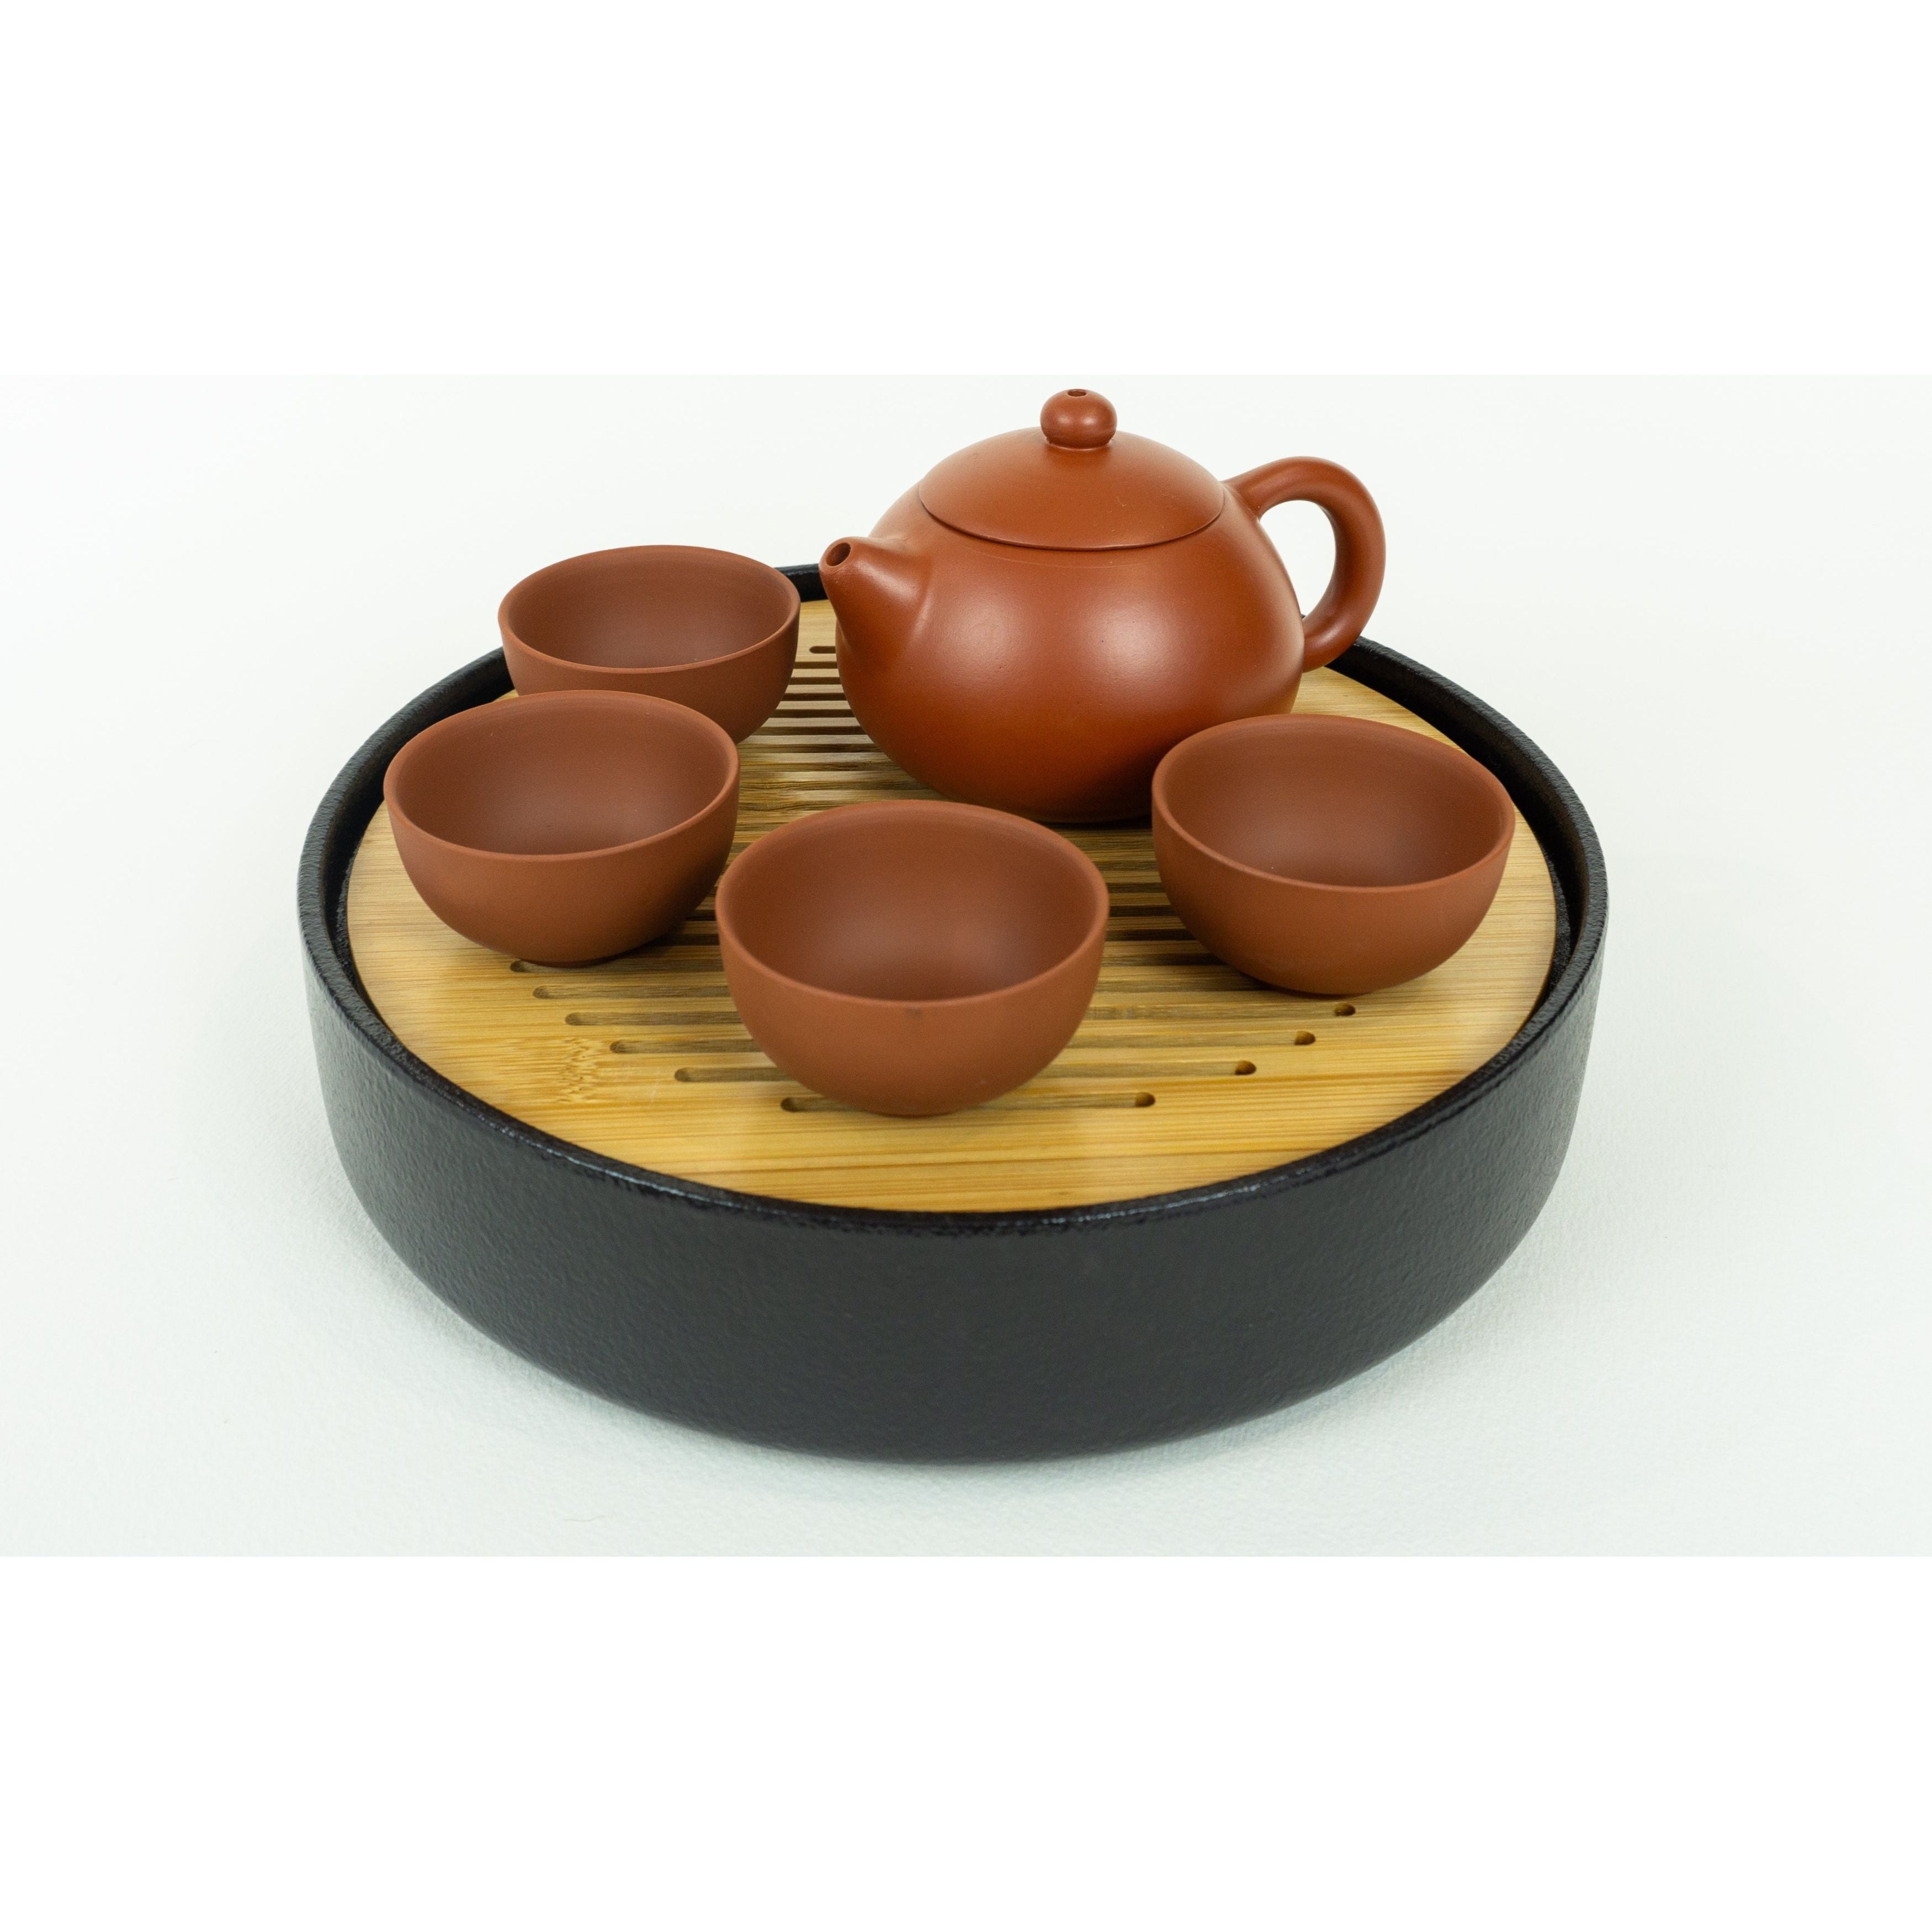 Juego de ceremonia del té, tetera Yixing con tapa abovedada de color marrón rojizo, 4 tazas